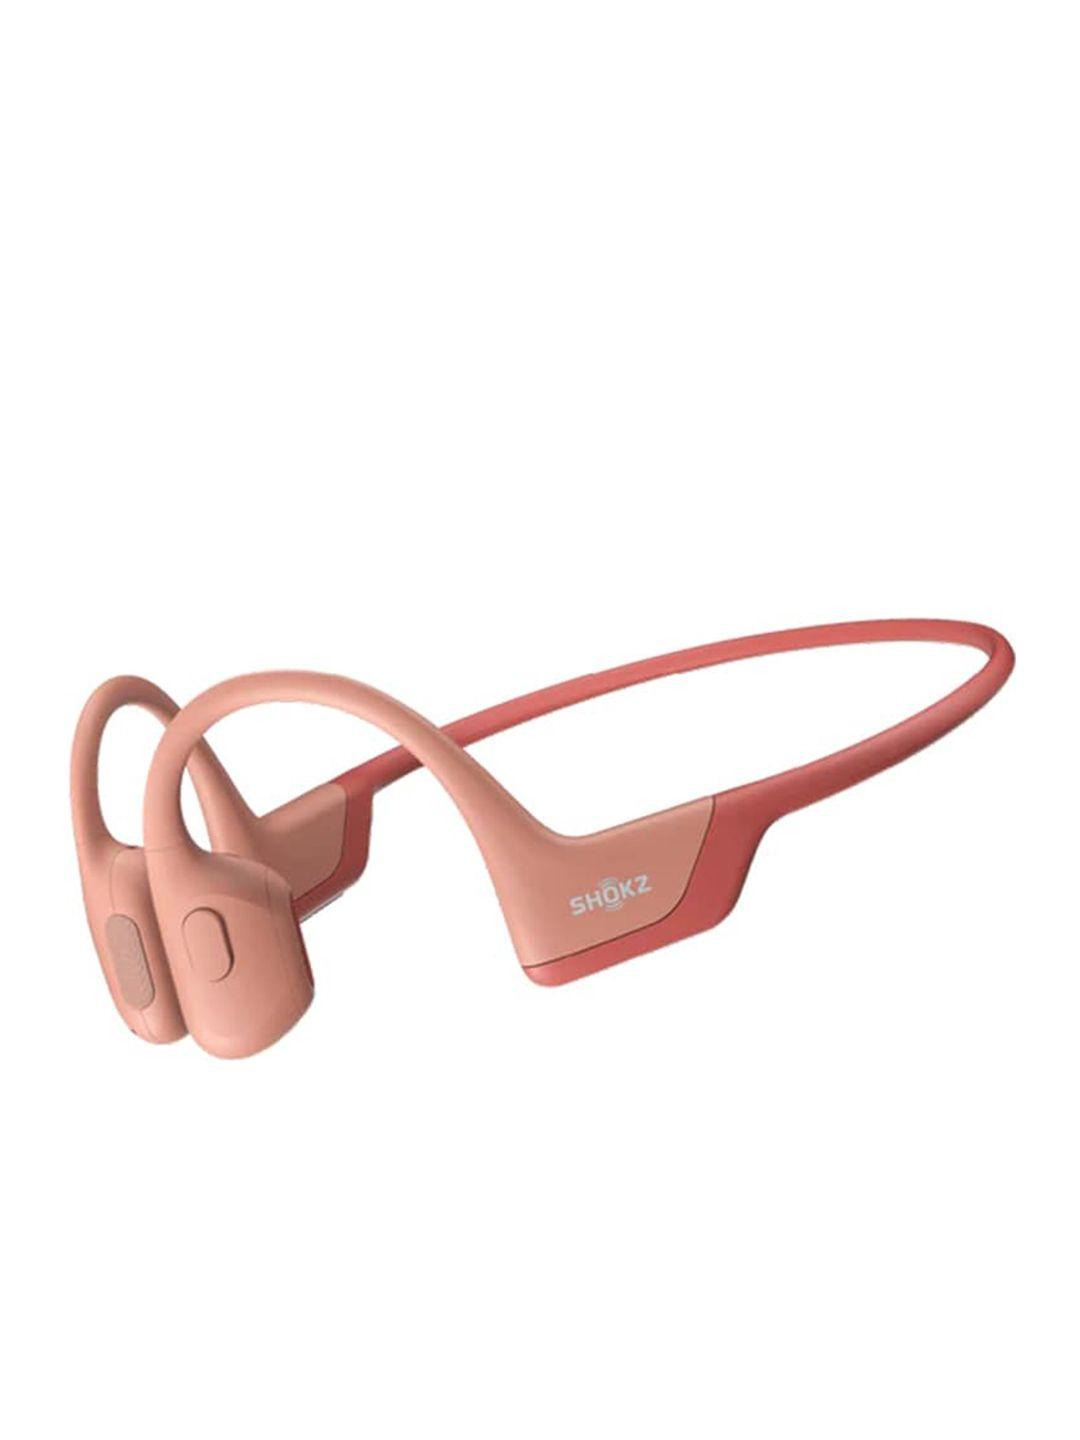 shokz open move on-ear bluetooth sport bone conduction sweatproof wireless headphones